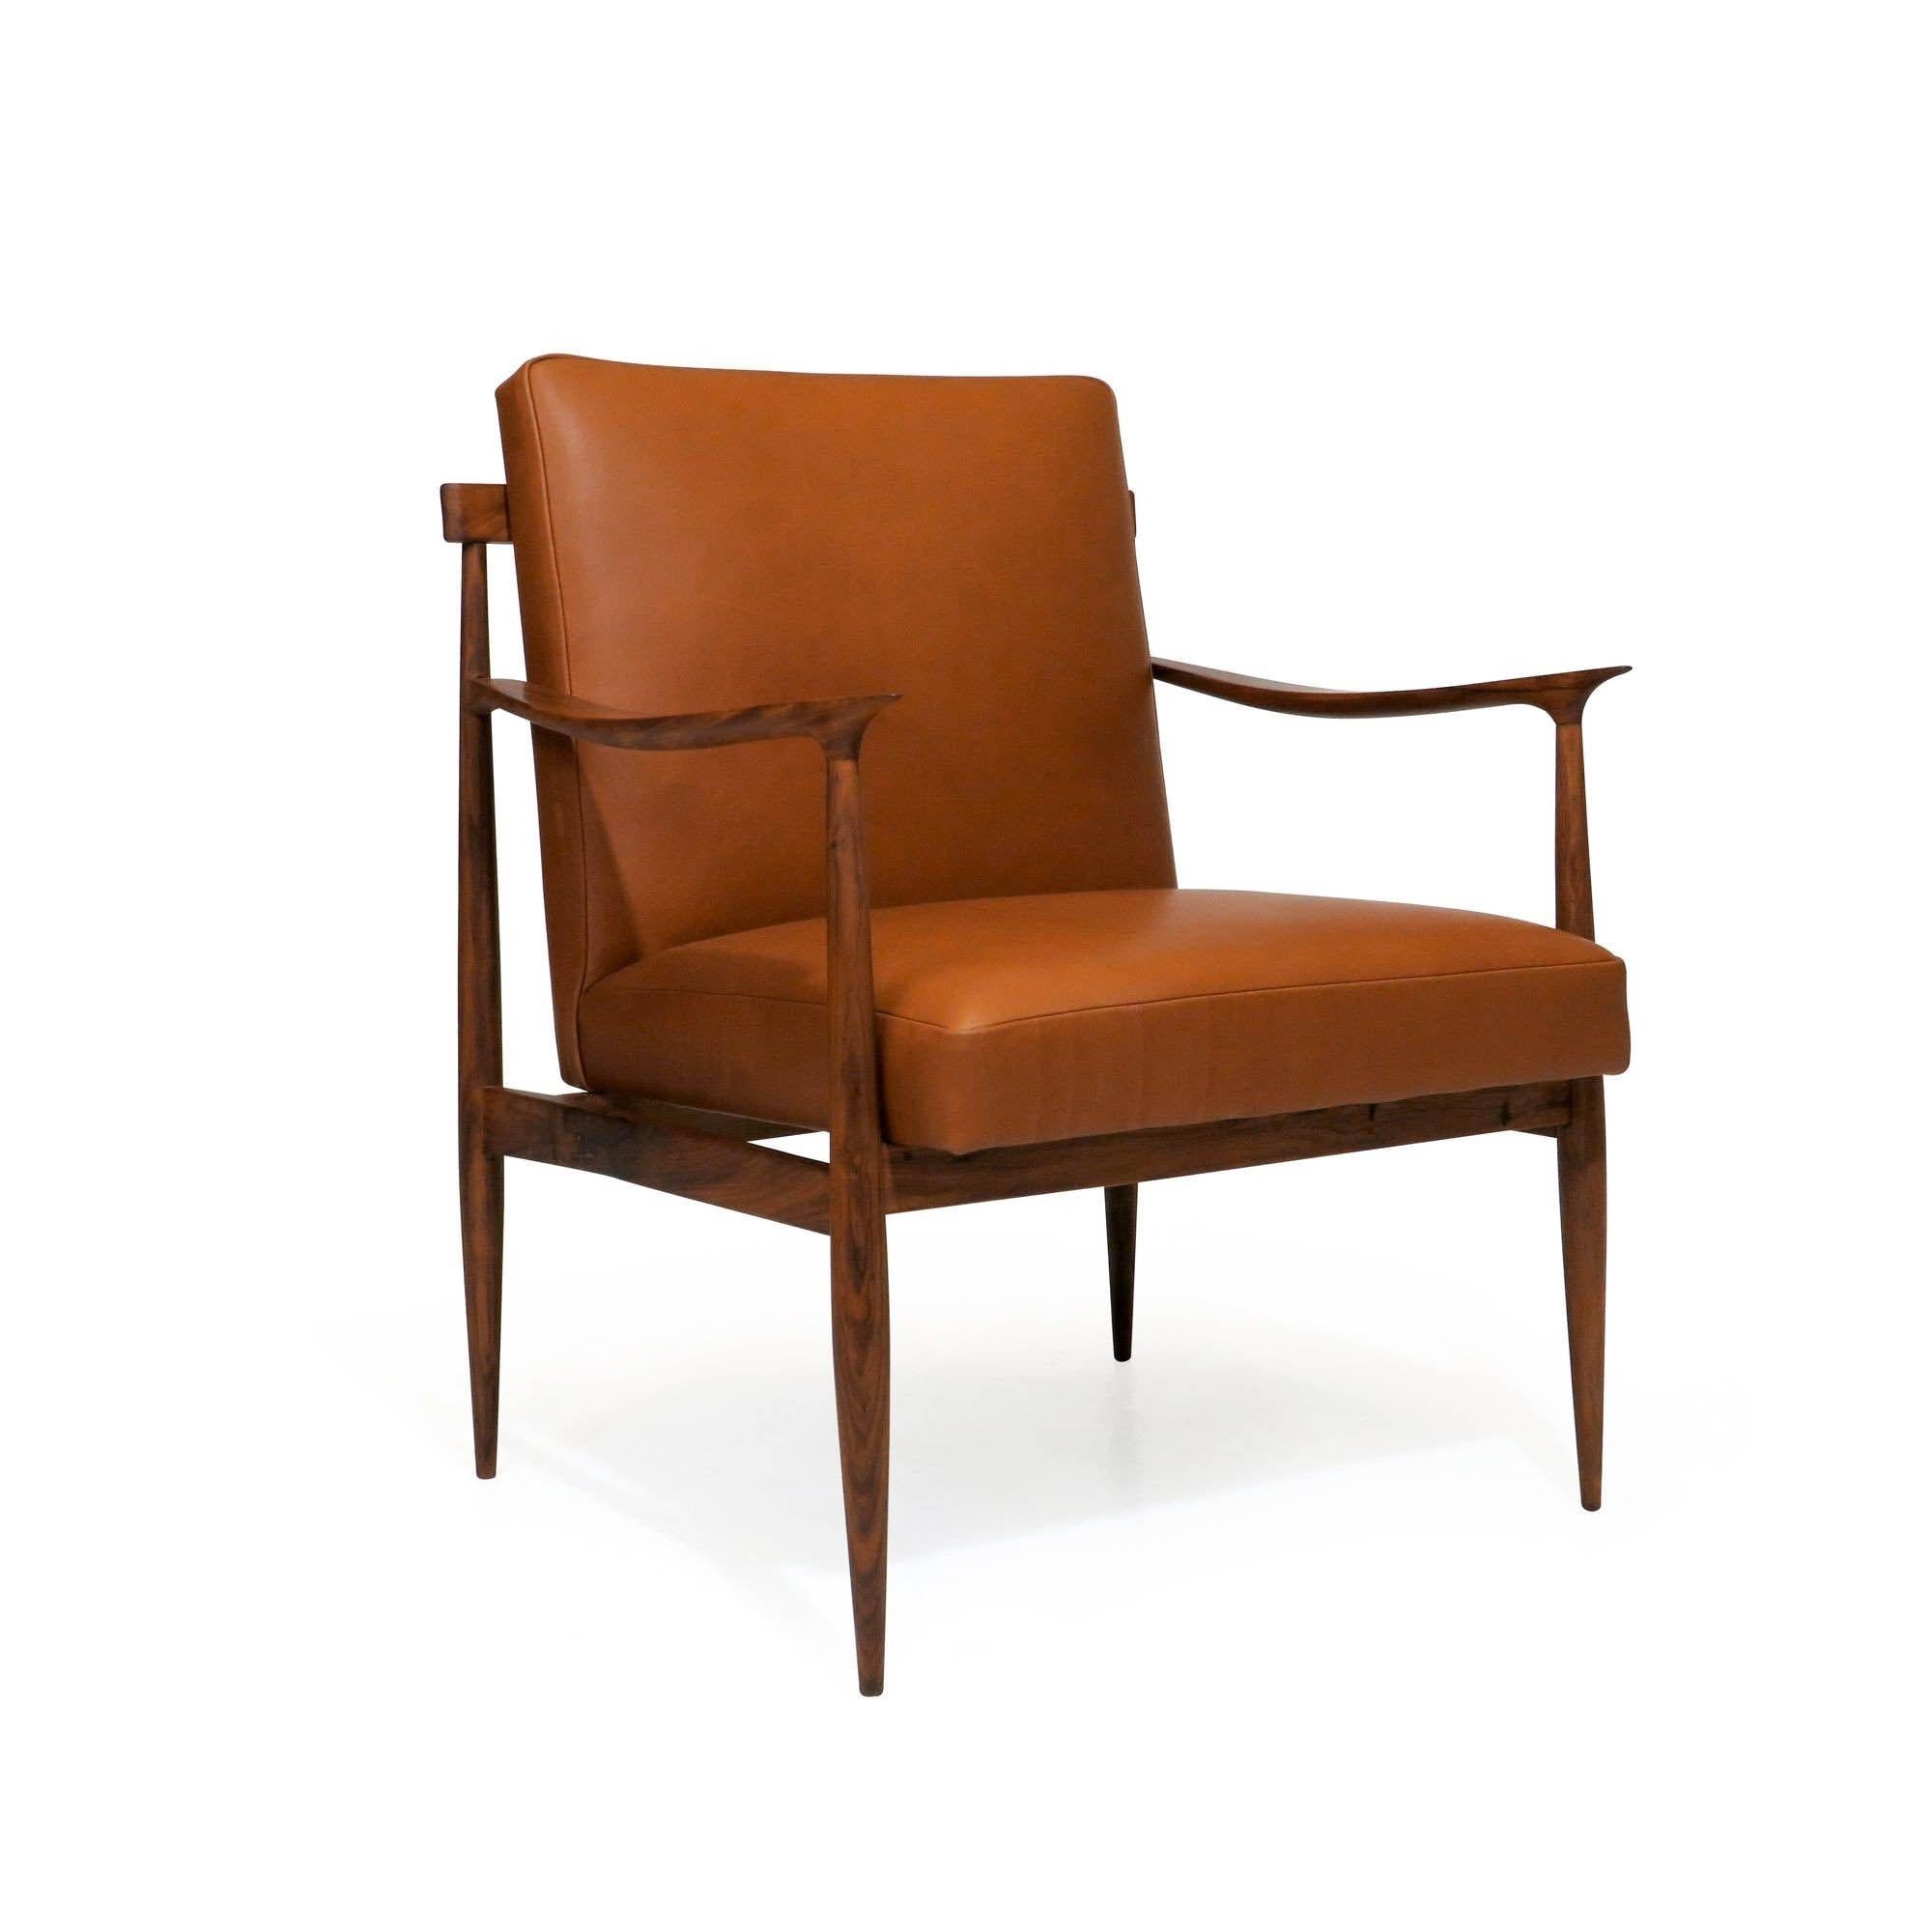 Chaise de salon Giuseppe Scapinelli, fabriquée à la main en caviuna massif, de forme sculpturale avec des bras inclinés et des bords effilés, et revêtue d'un cuir teint à l'aniline au toucher extrêmement doux. Cet élégant fauteuil de salon moderne